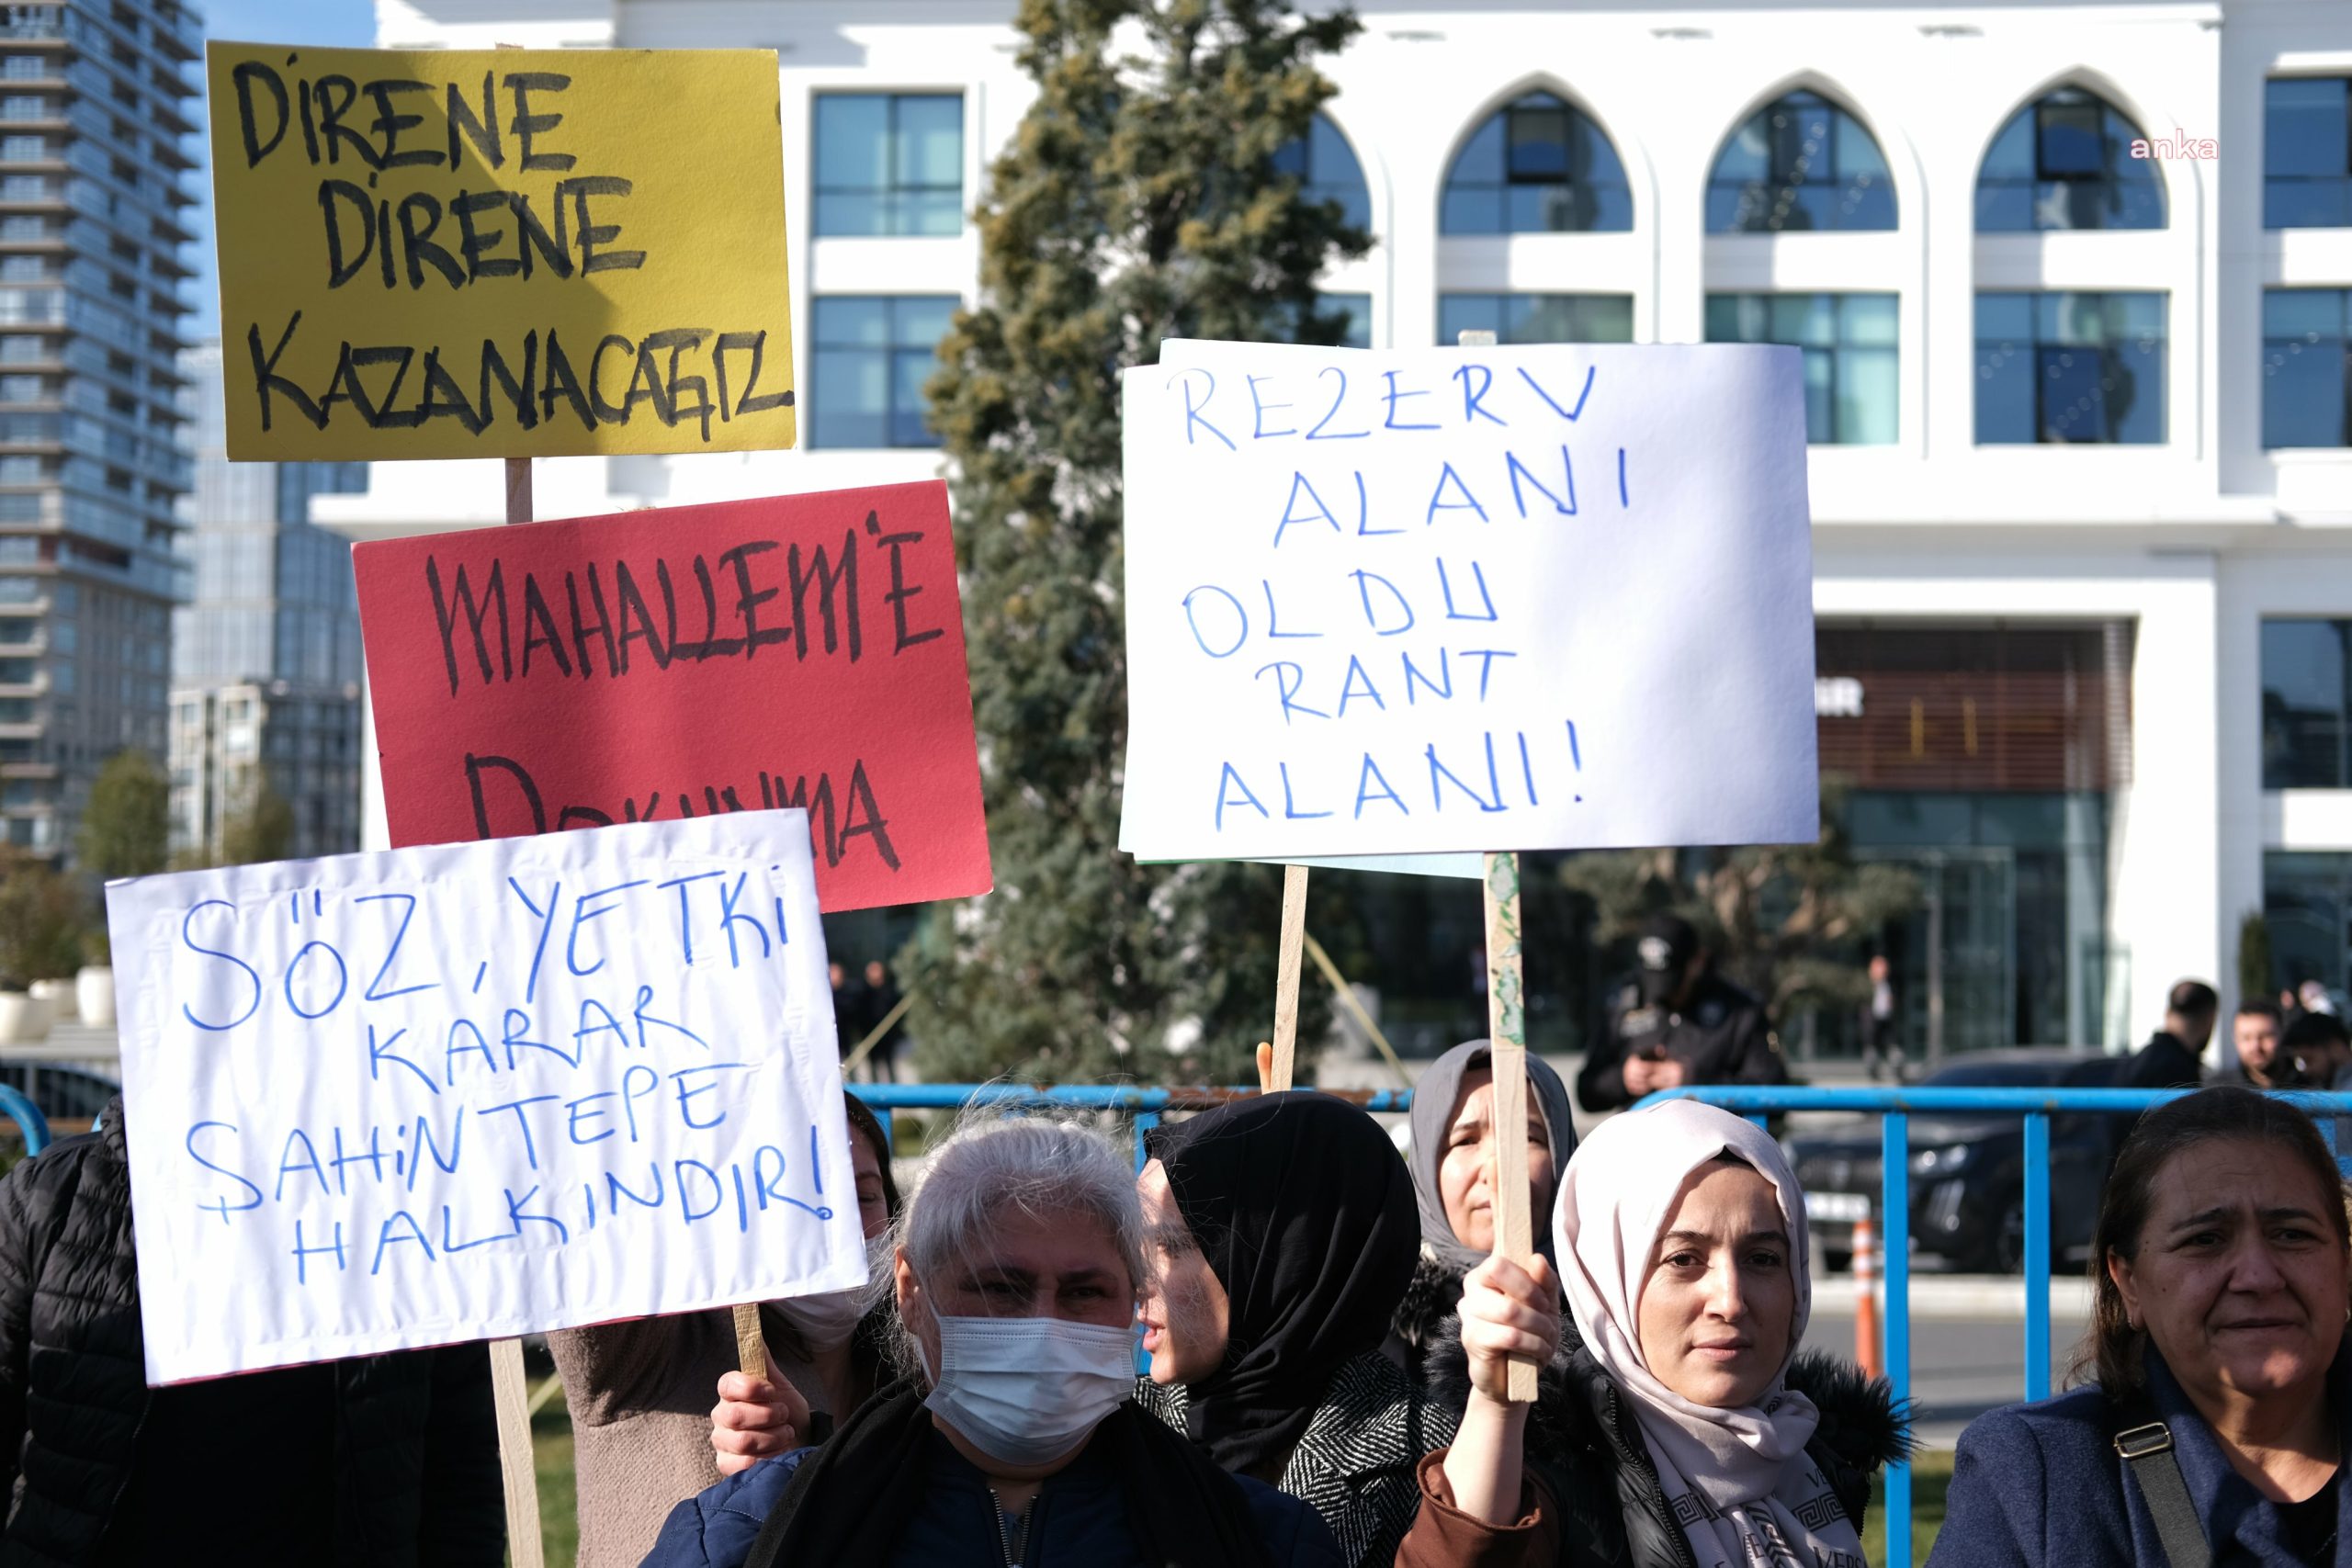 Şahintepe’lilerden AKP’li Başakşehir Belediyesi’ne ‘rezerv alan’ tepkisi: Gitmiyoruz